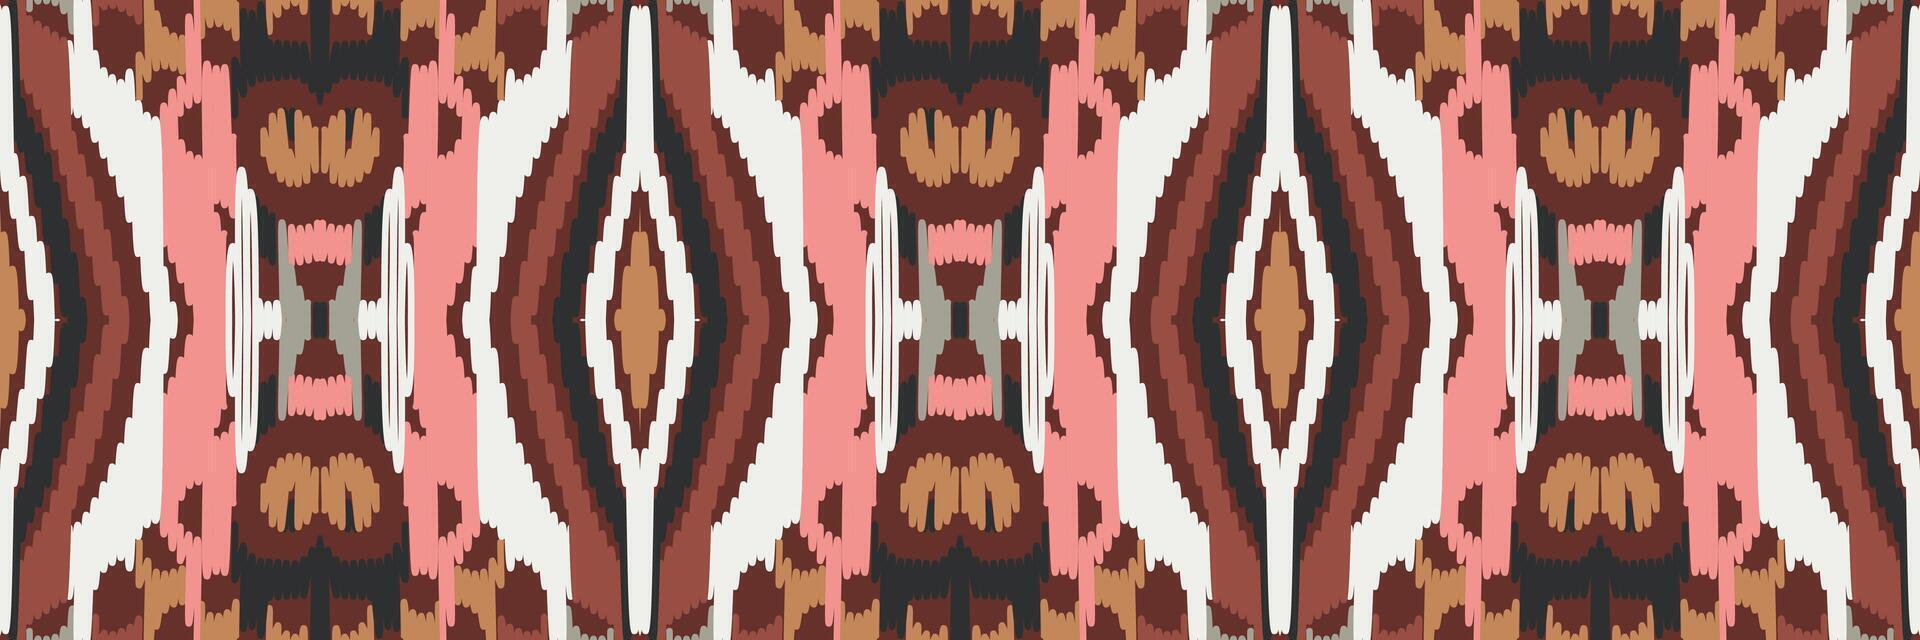 ikat abstract geometrisch borduurwerk etnisch patroonontwerp. Azteekse stof tapijt mandala ornament chevron textiel decoratie behang. tribal boho inheemse etnische turkije traditionele vector background